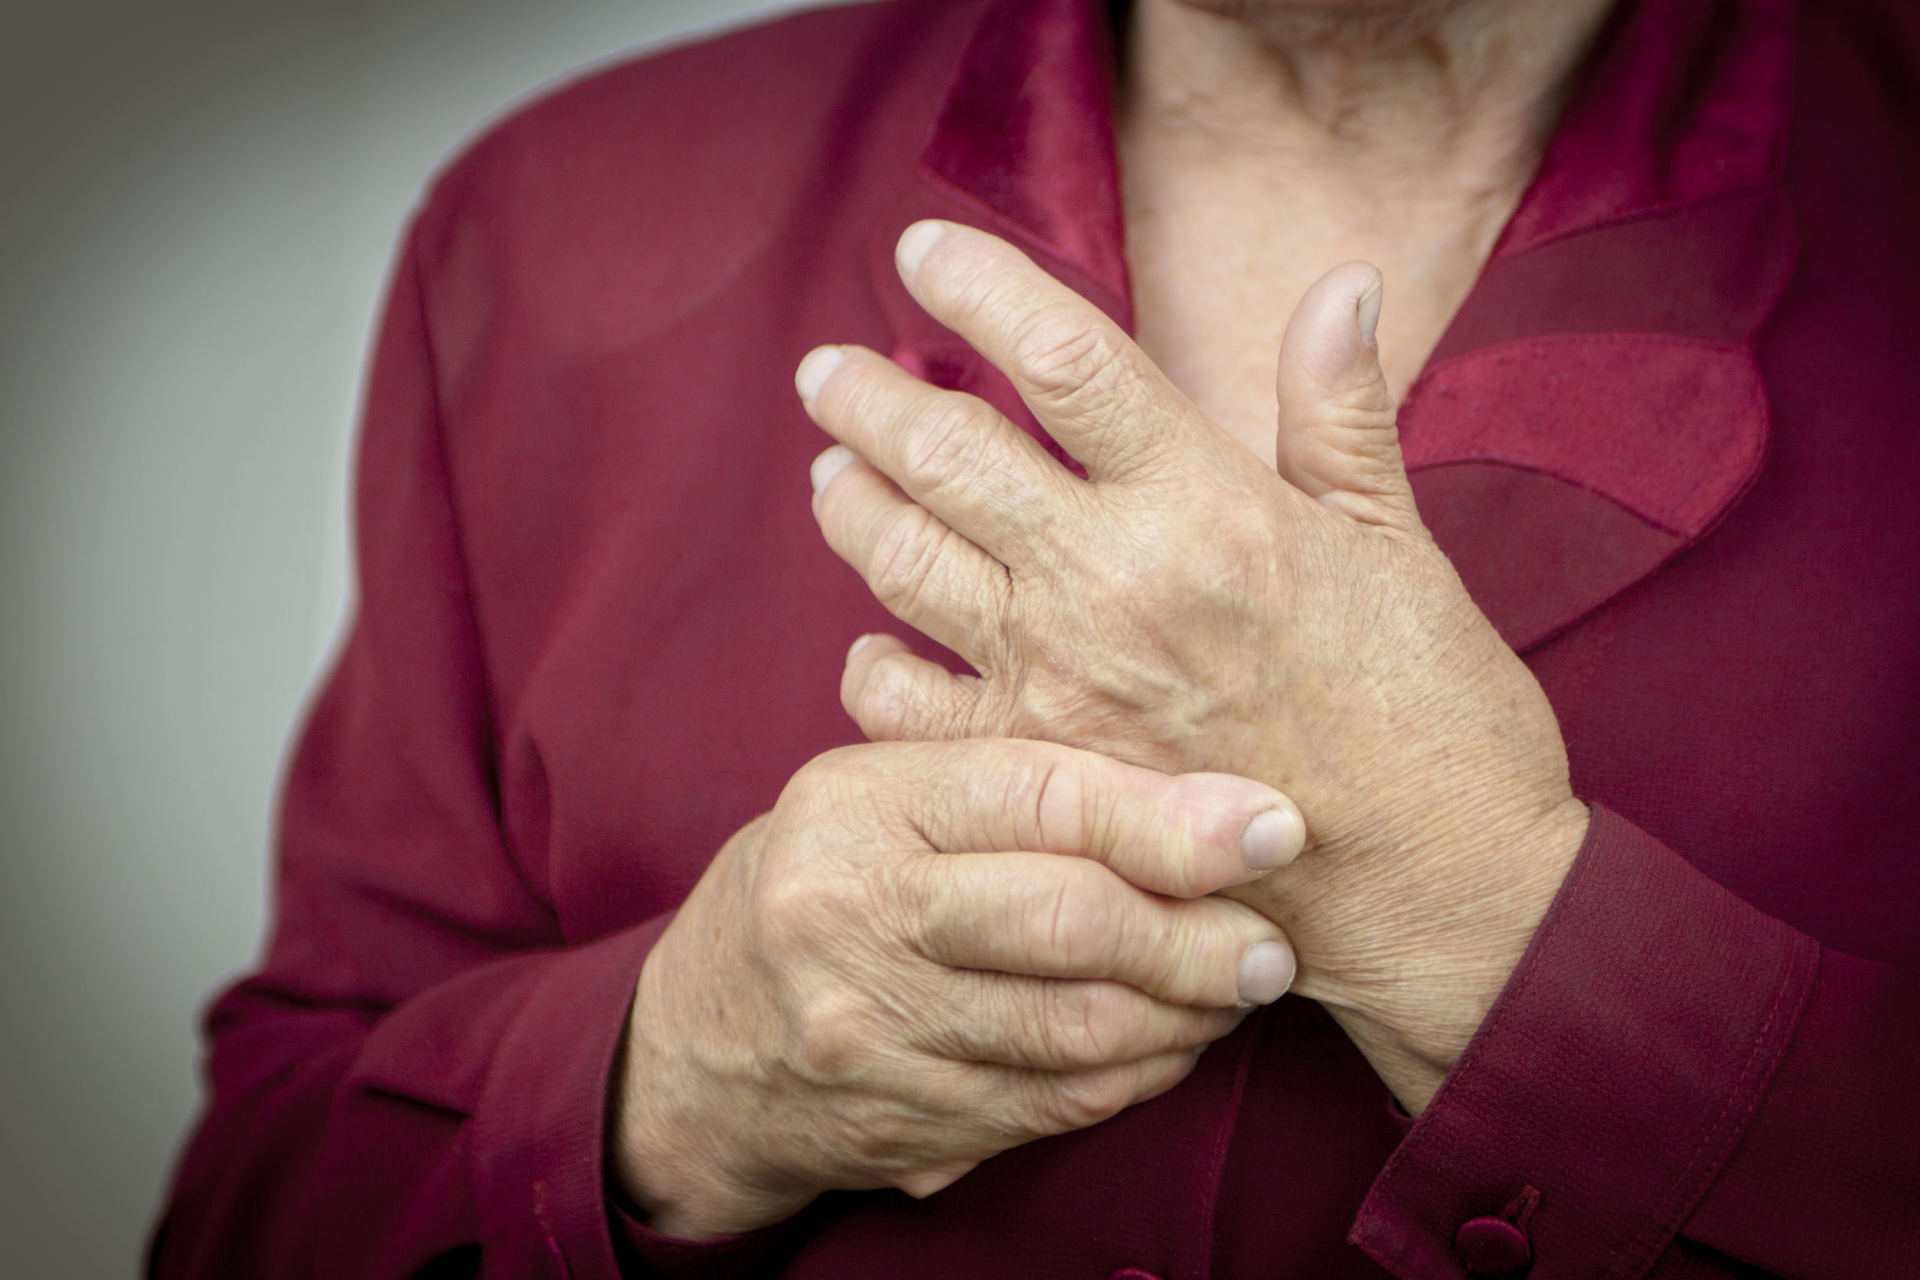 liaudies metodai gydant artrozė rankas pirštai artritu sergantiems pacientams